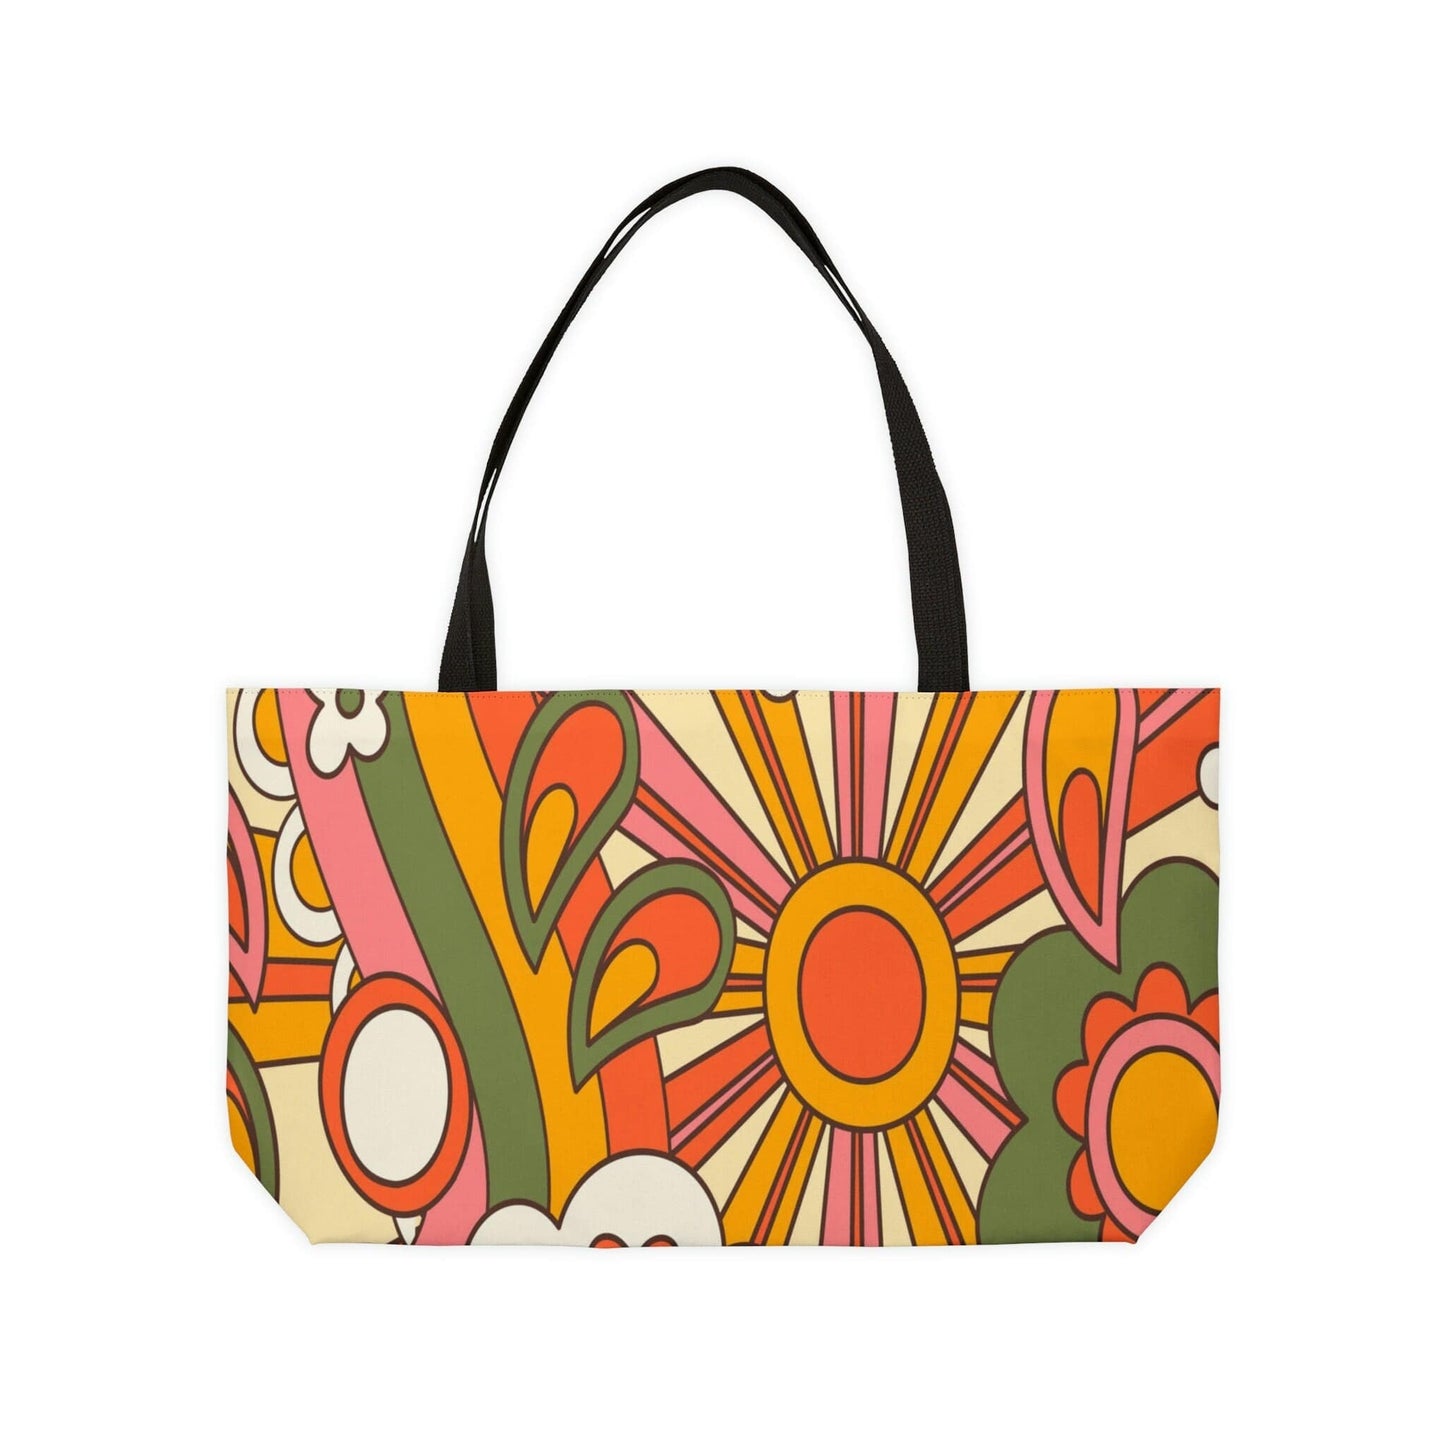 Kate McEnroe New York Hippie 70s Sunburst Floral Retro Groovy Weekender Tote Bag Tote bags WT-HIP-GRO-1